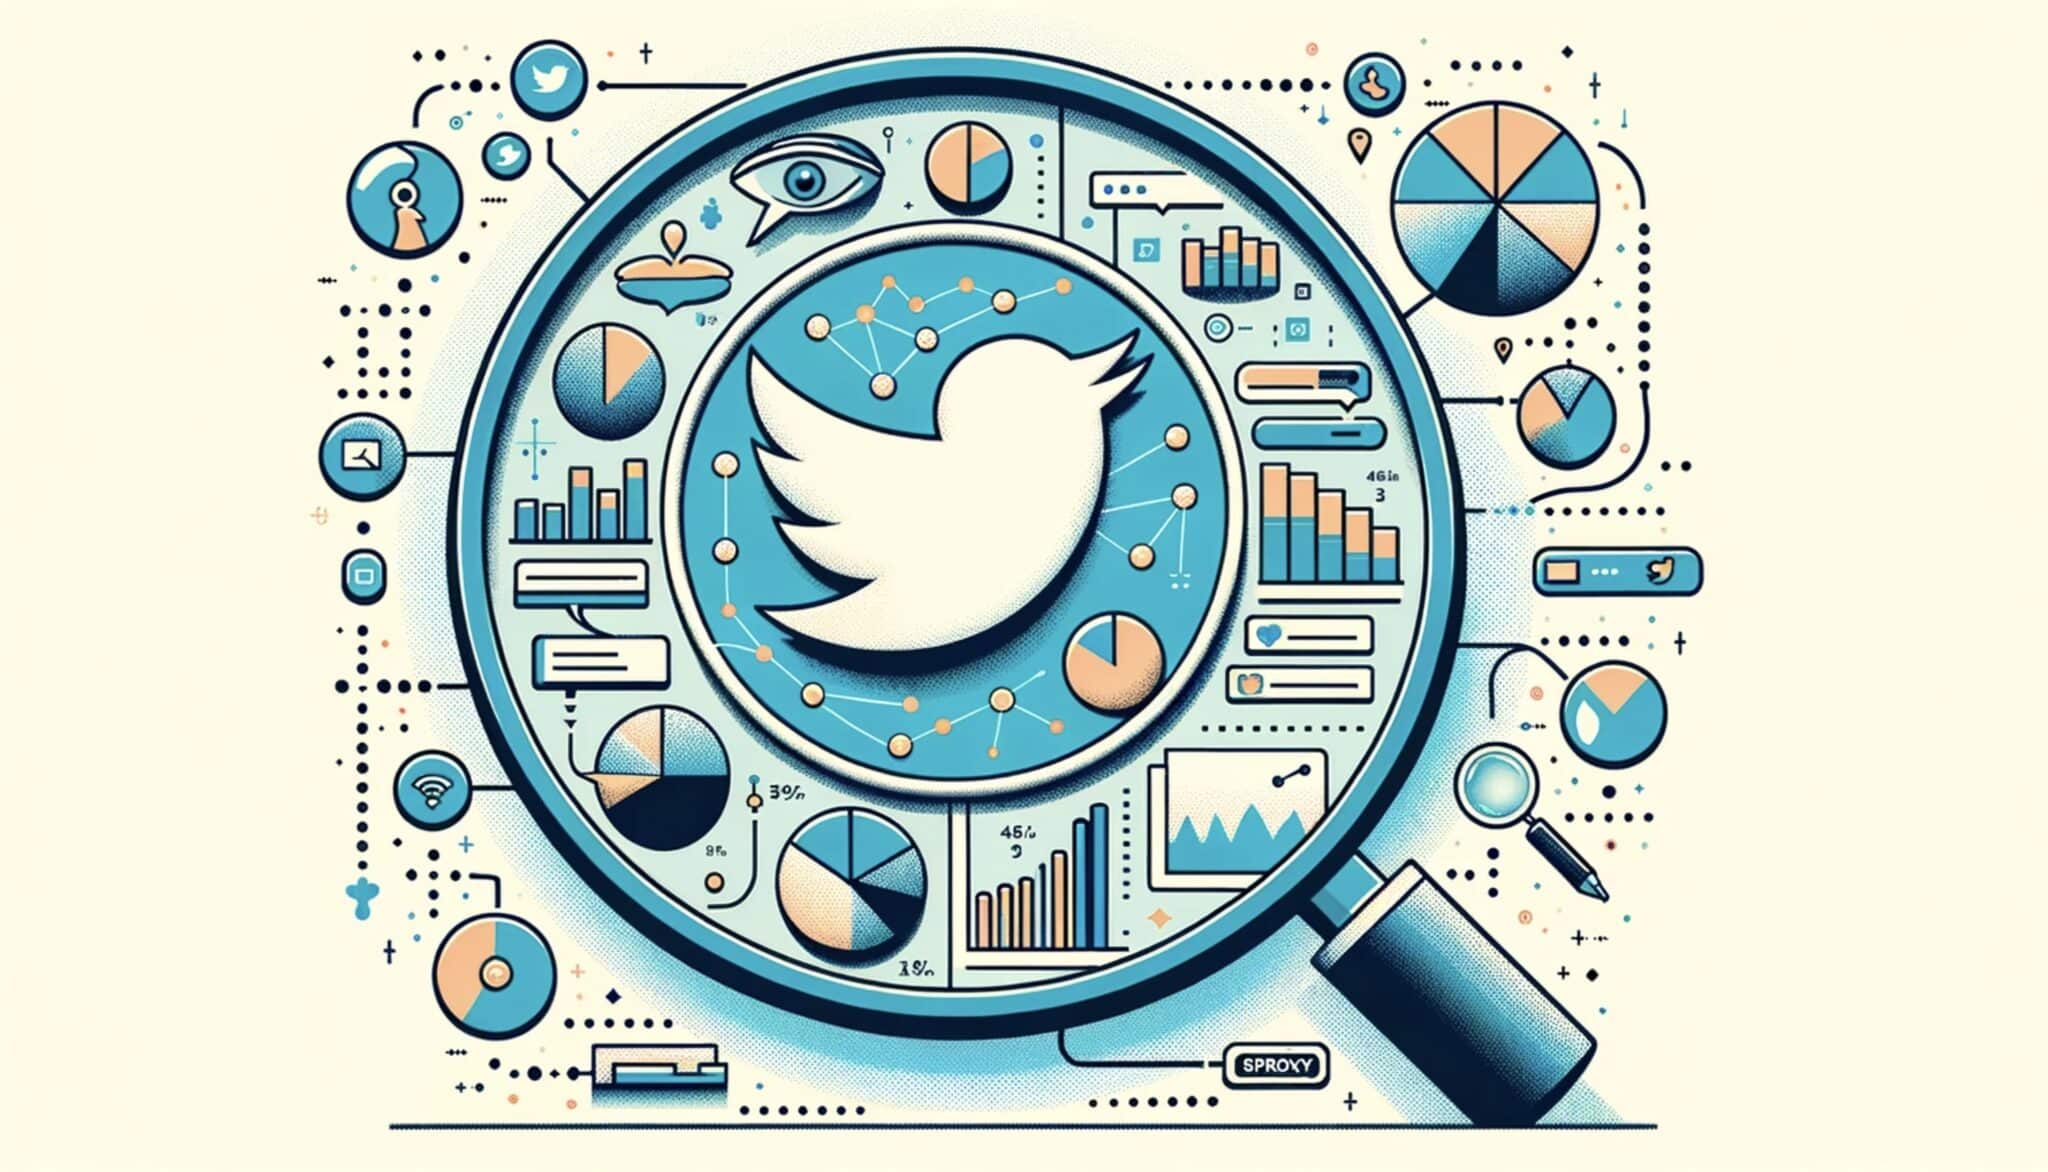 ट्विटर एनालिटिक्स का अनावरण: आपके प्रोफ़ाइल इंटरैक्शन की एक झलक